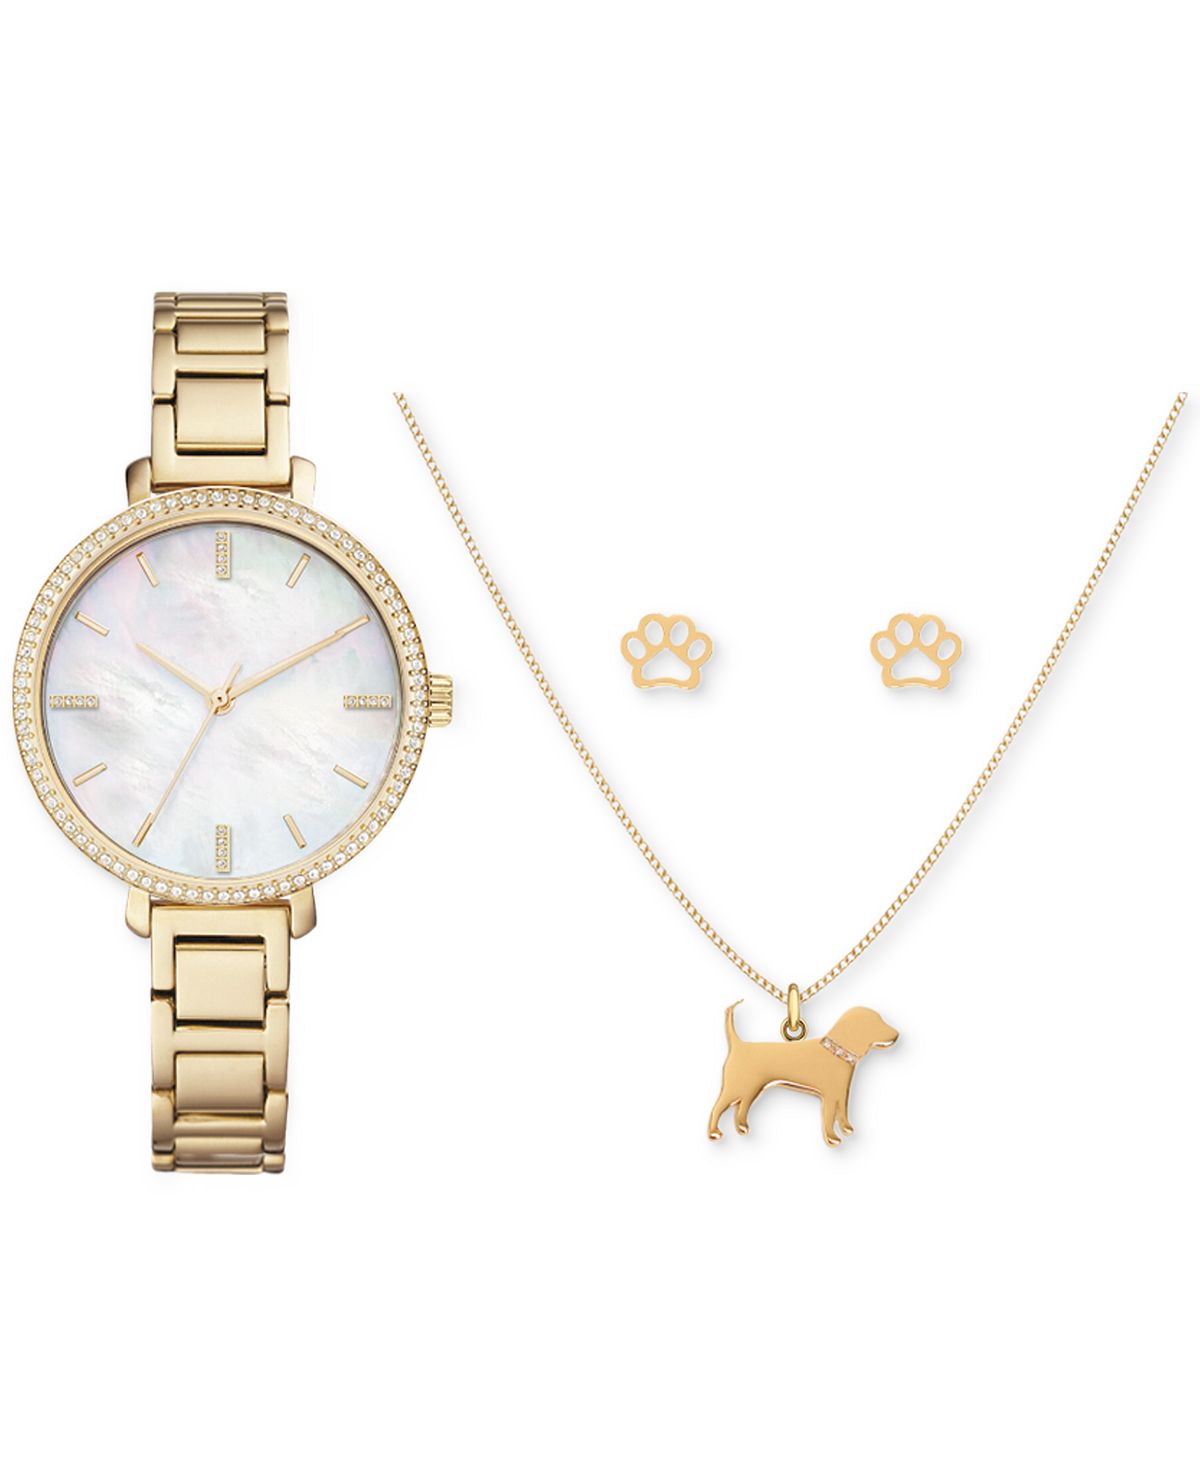 Женские часы-браслет из металлического сплава золотистого цвета, подарочный набор 38 мм Jessica Carlyle, золотой